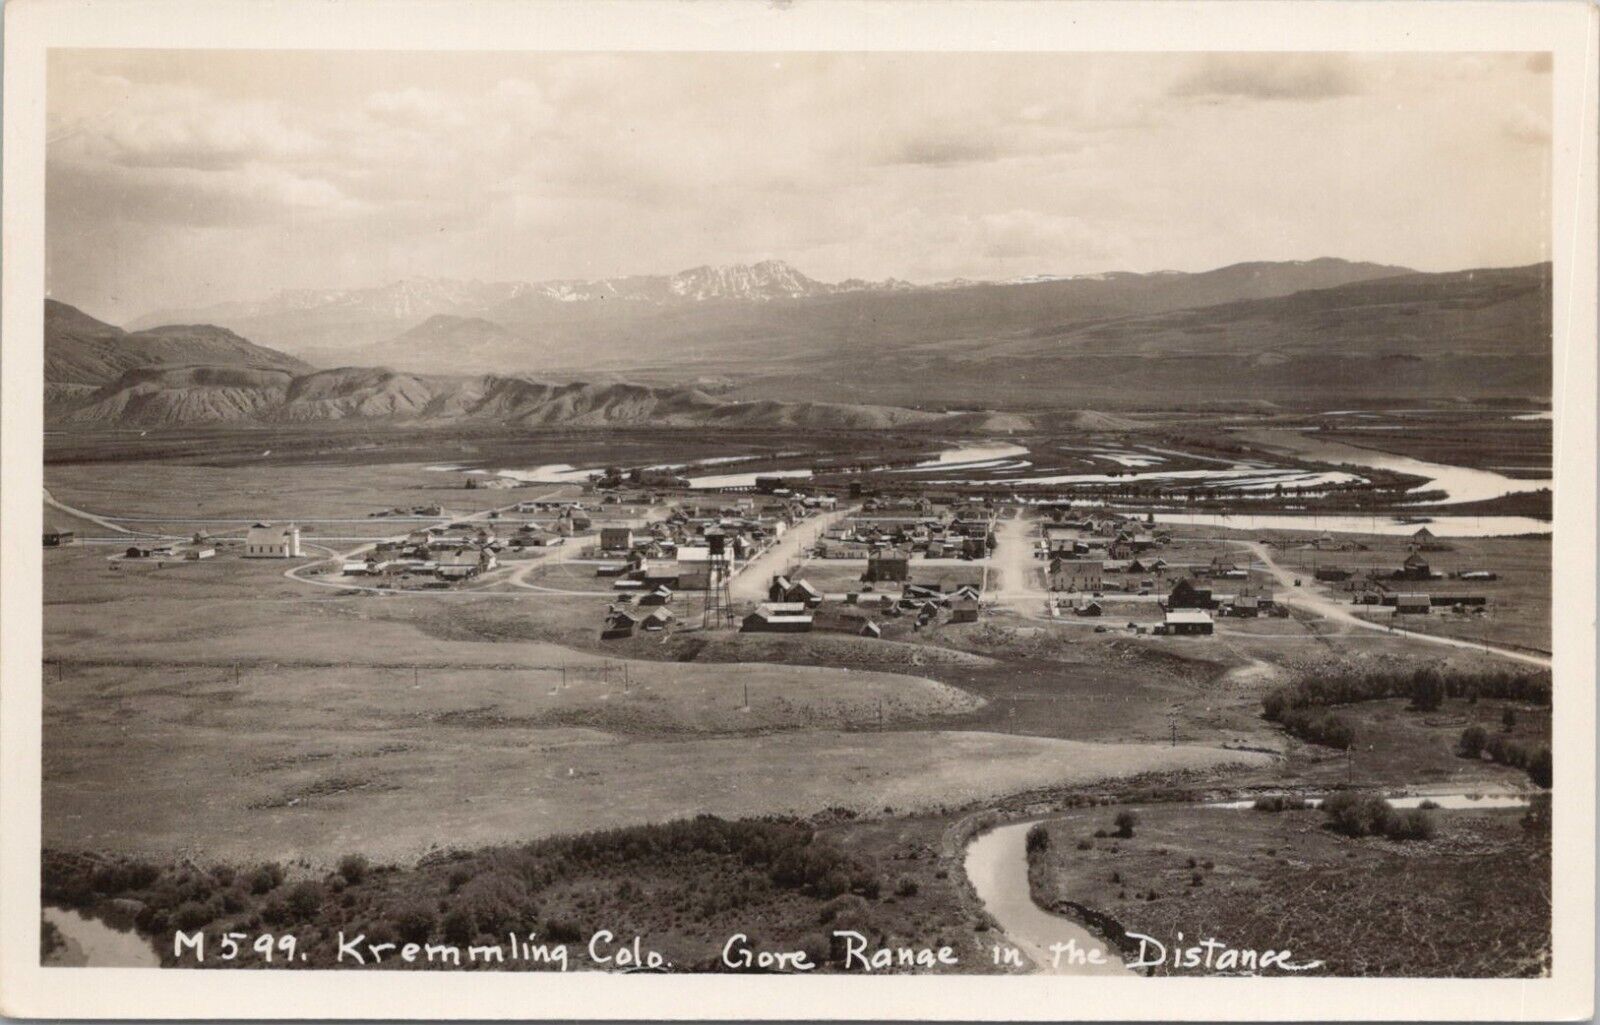 RPPC Kremmling Colorado - Panoramic Town View - 1930s era